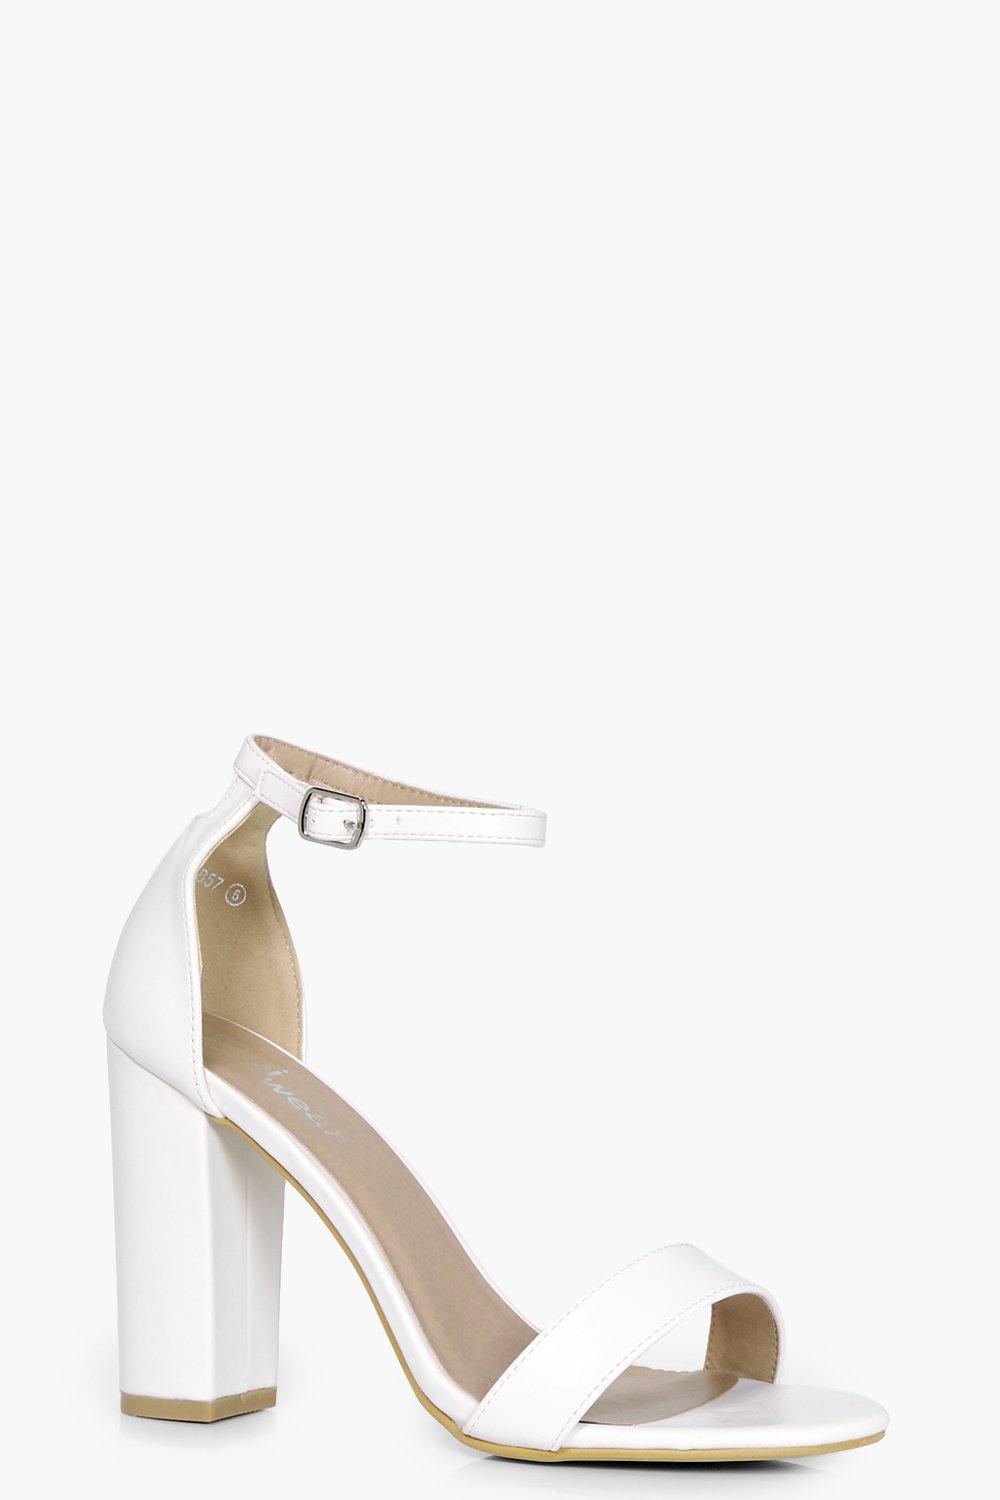 white block heels uk